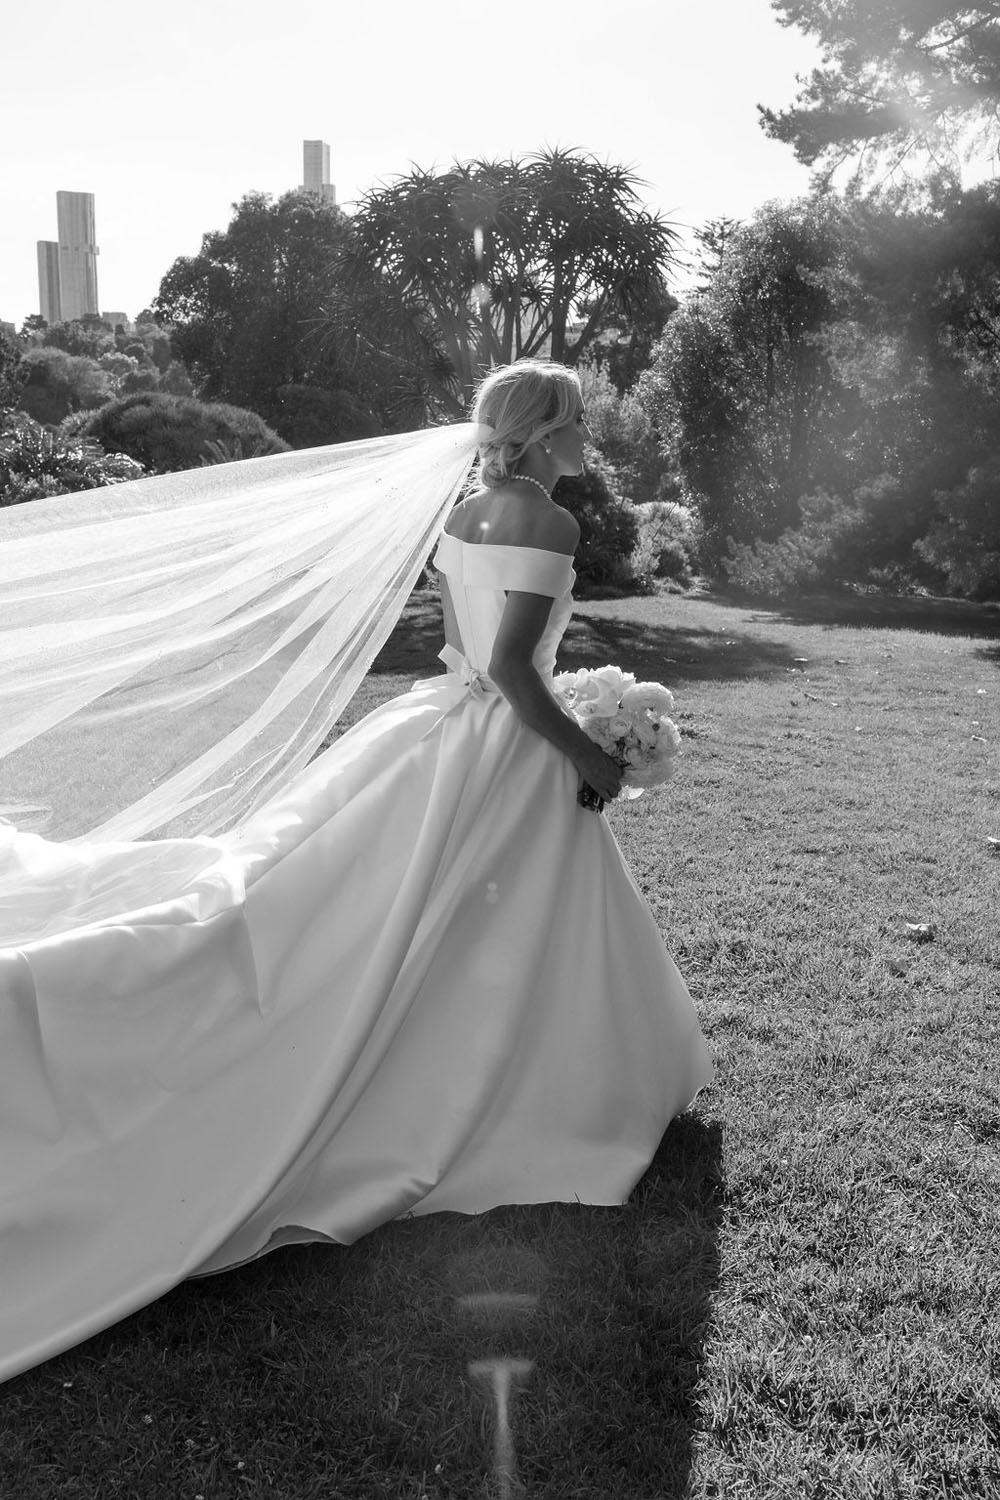 La clásica boda de la empresaria australiana Gretta van Riel